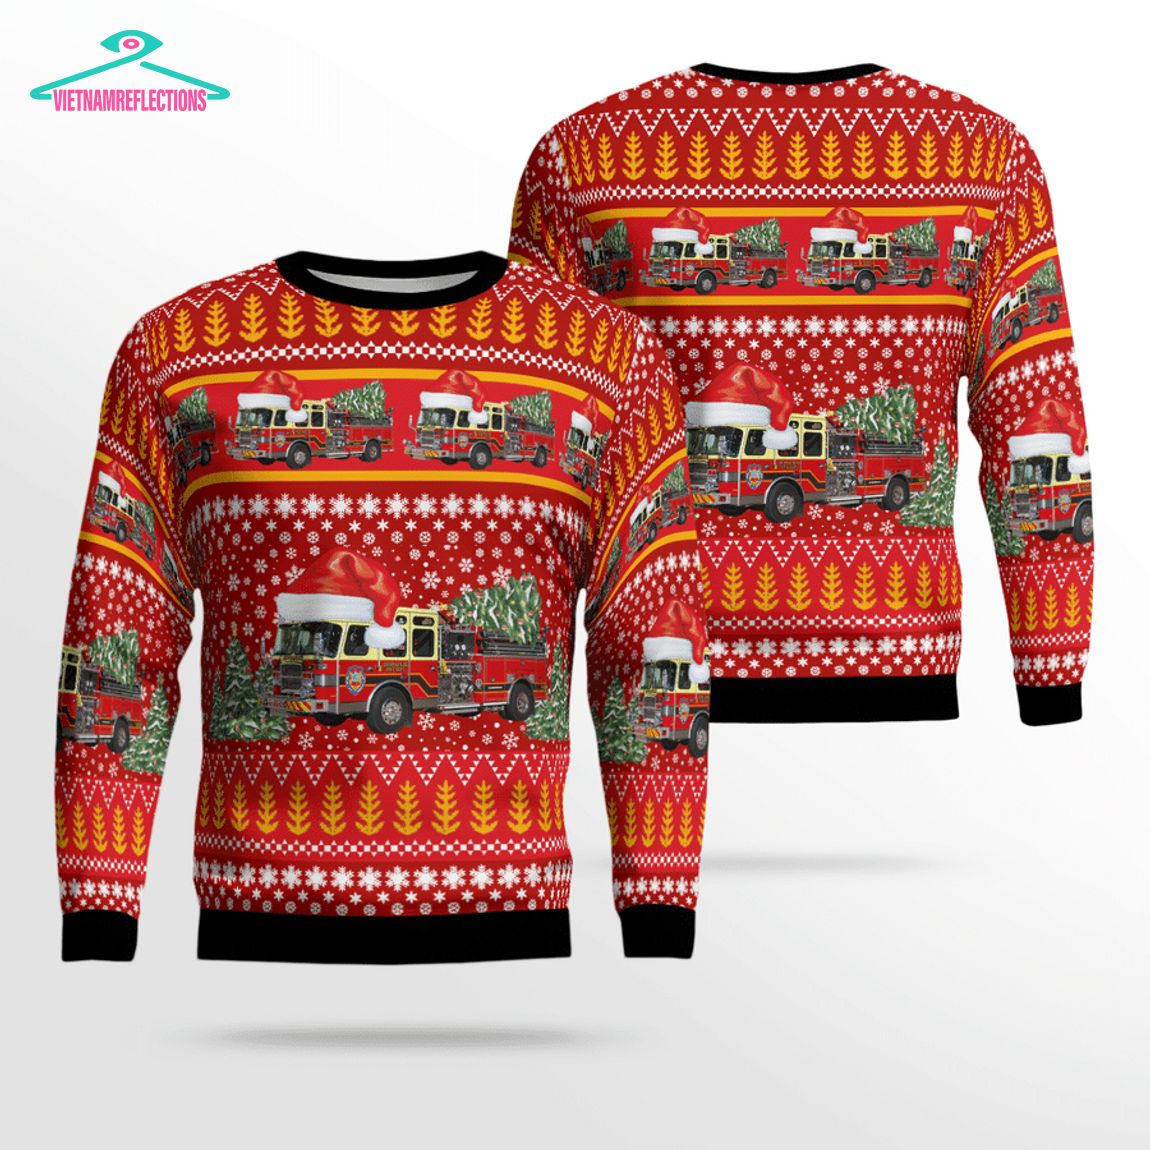 Pennsylvania Vigilant Hose Company 1 Ver 2 3D Christmas Sweater